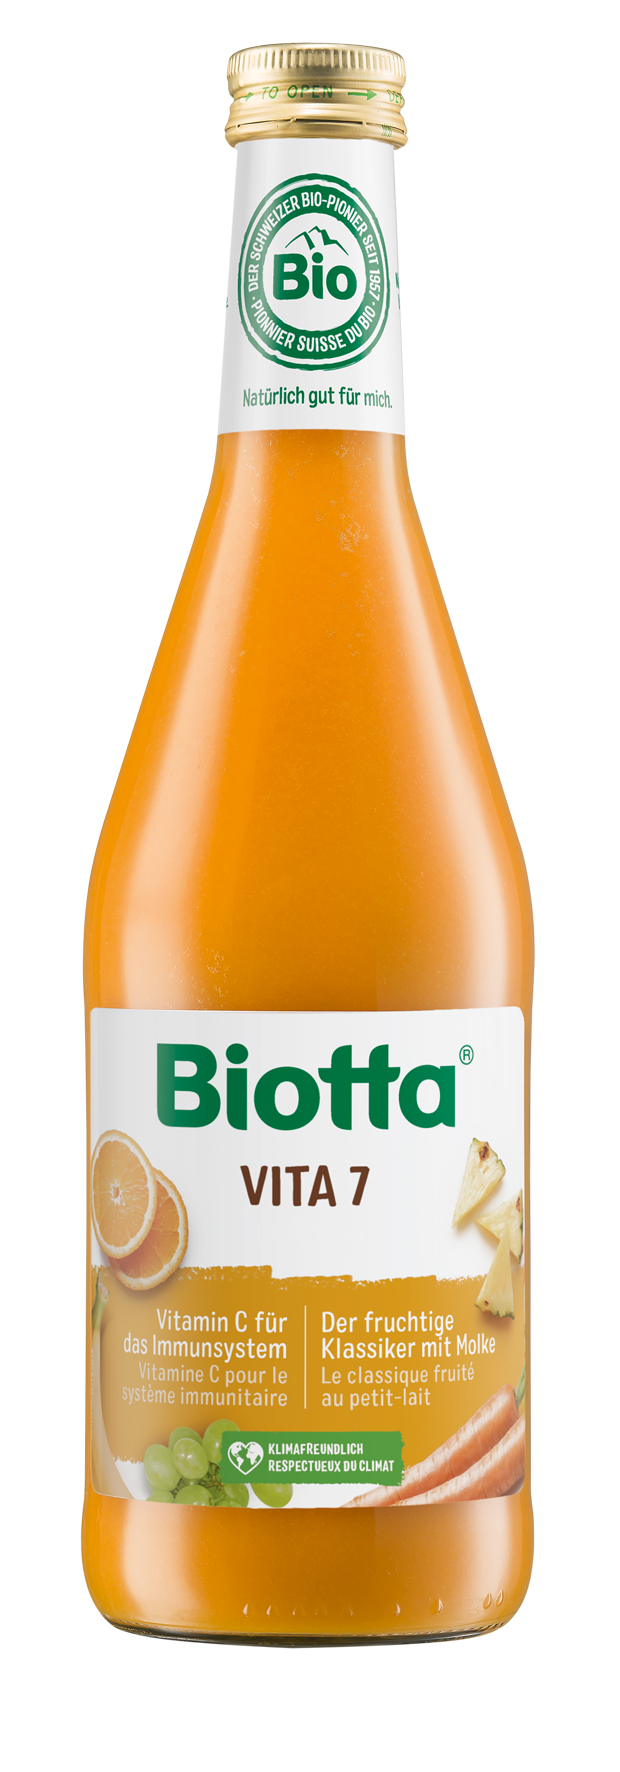 Biotta Vita 7 bio 500ml